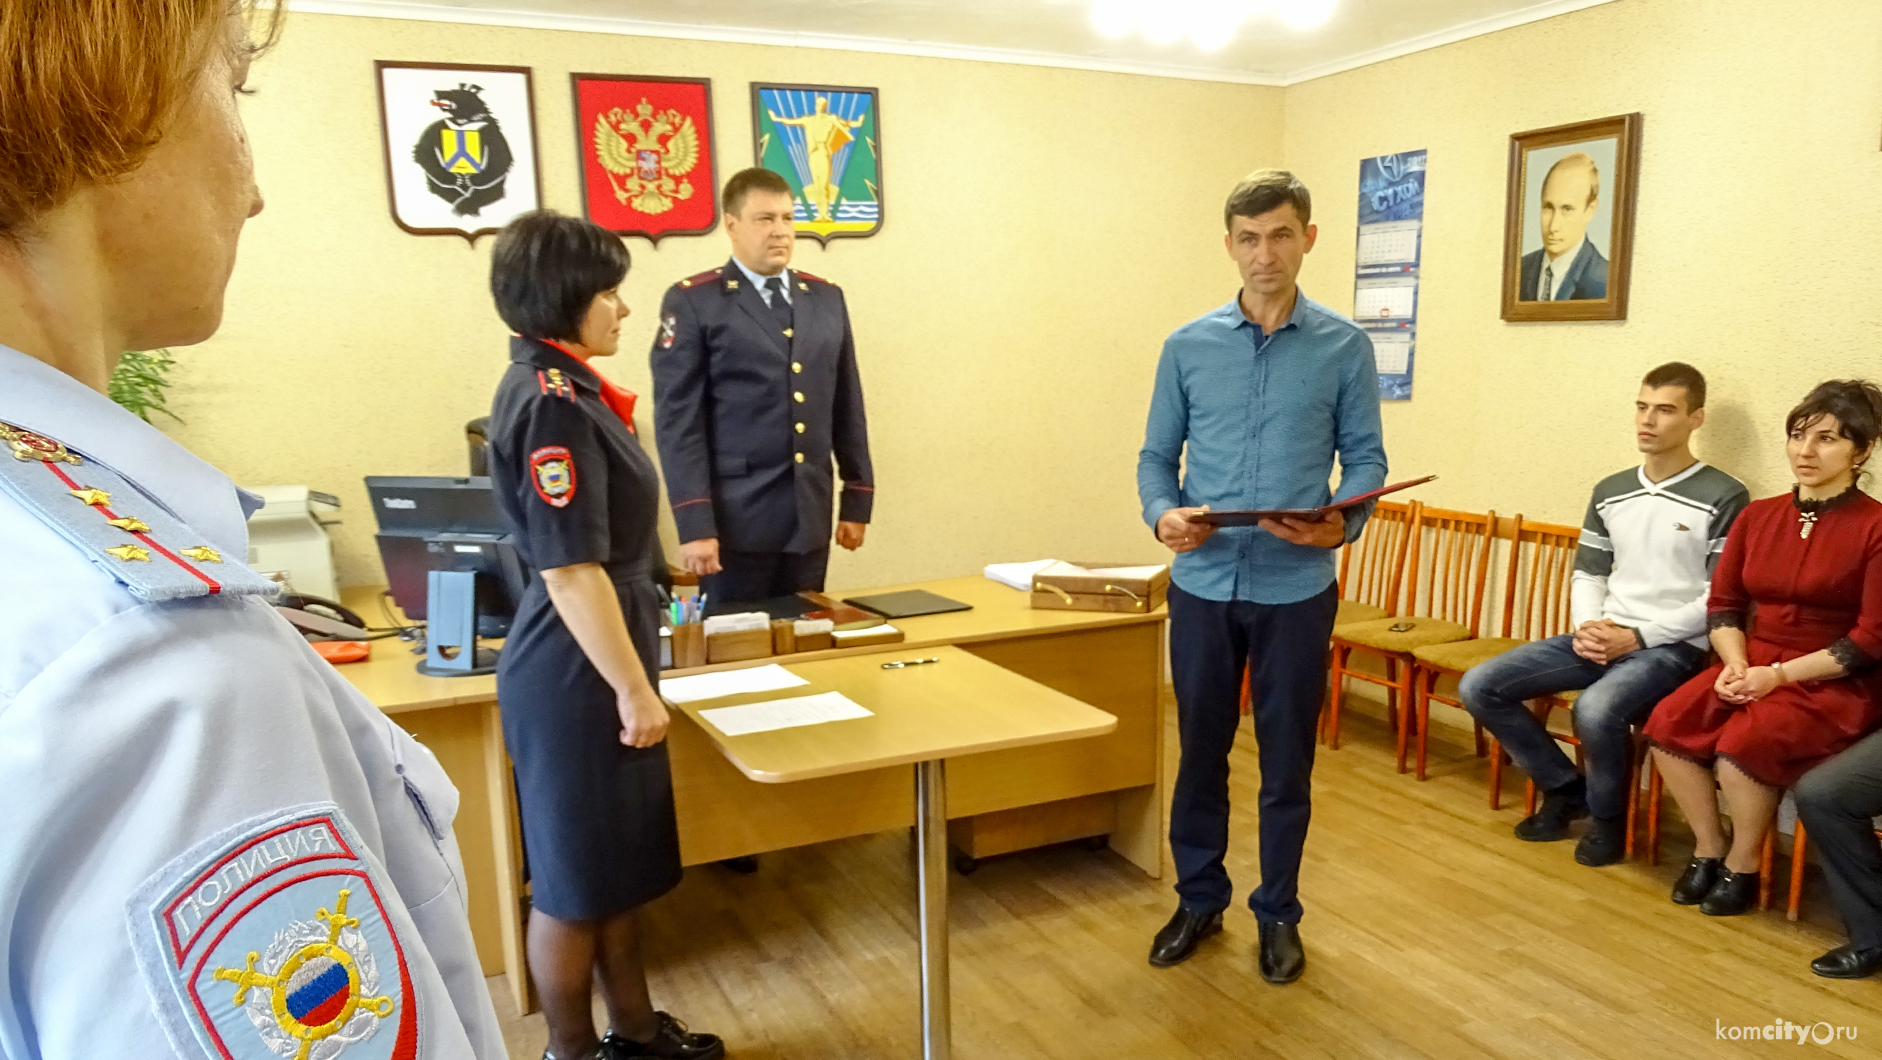 Иностранные граждане впервые присягнули на верность Российской Федерации, став гражданами нашей страны